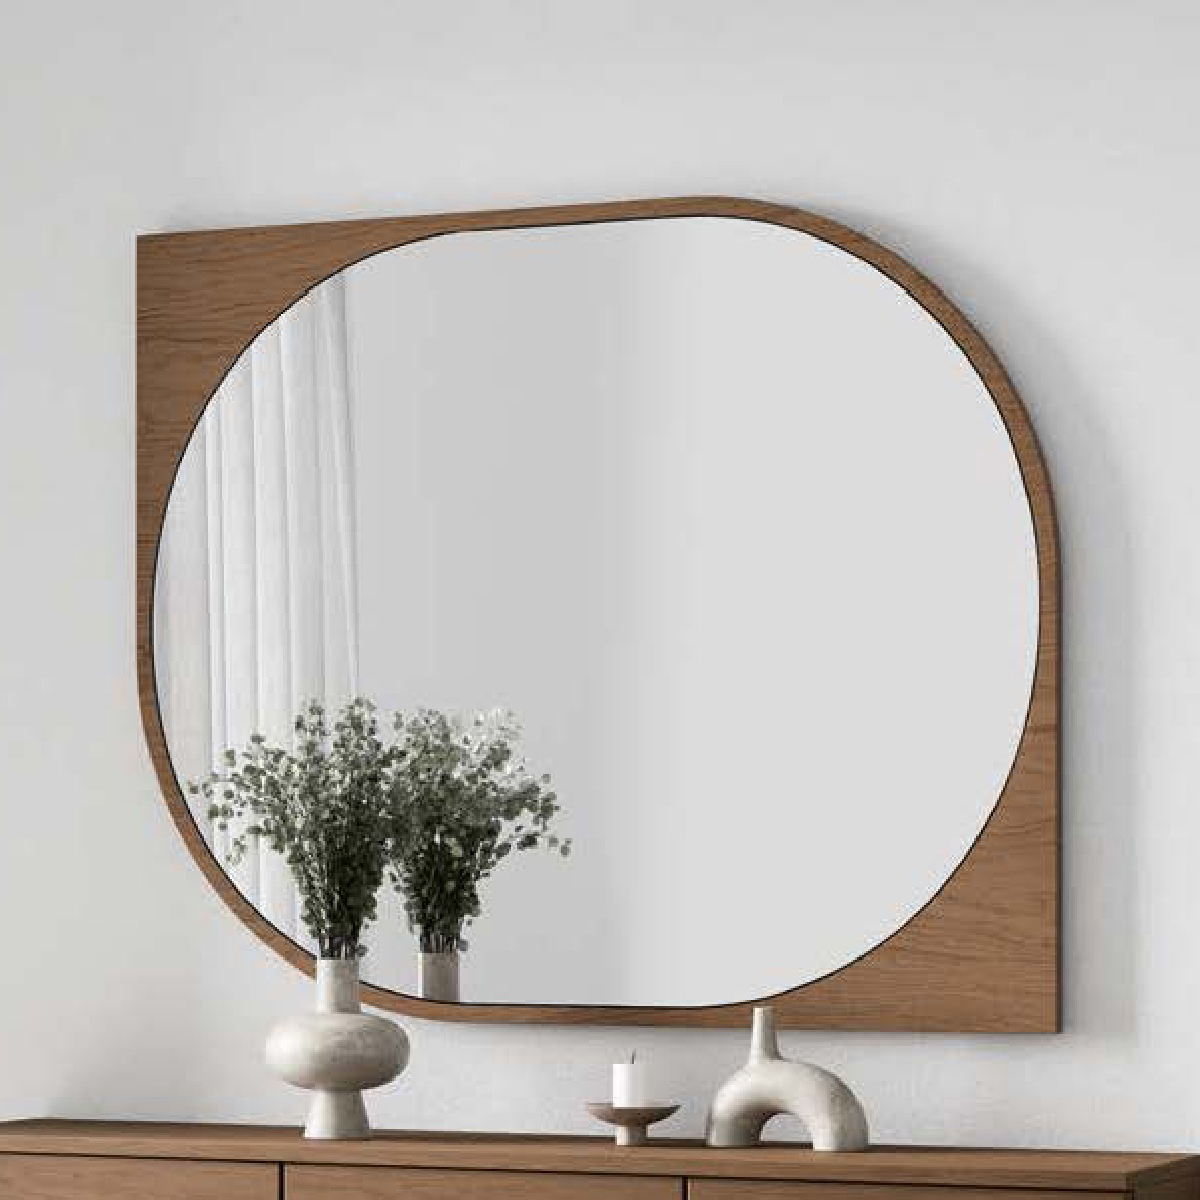 Зеркало с рамой Disemobel Kendra, цвет Cuero, размер 110x2x90 см (4019)4019